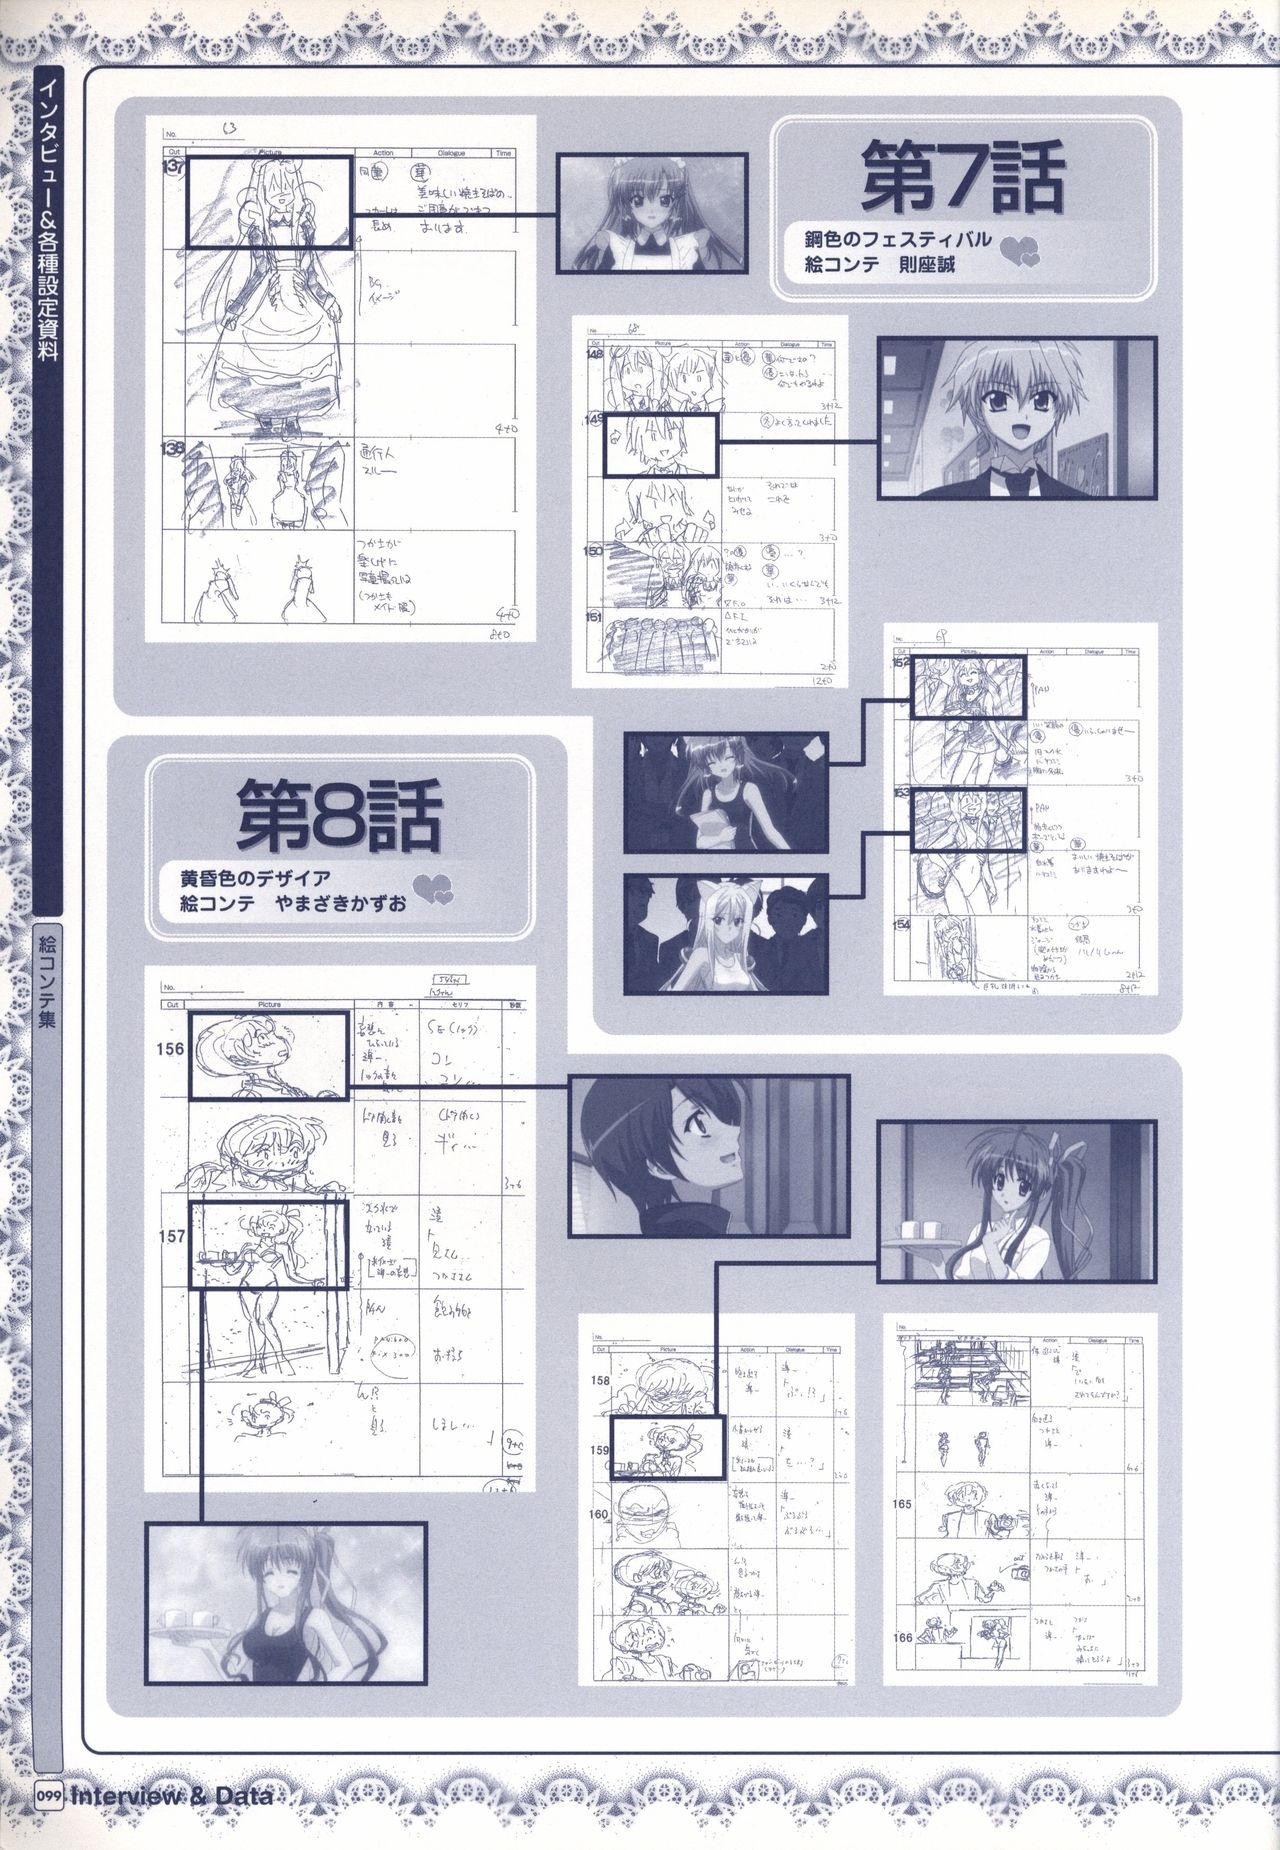 TV ANIME Akaneiro ni Somaru Saka Visual Guide Book 99